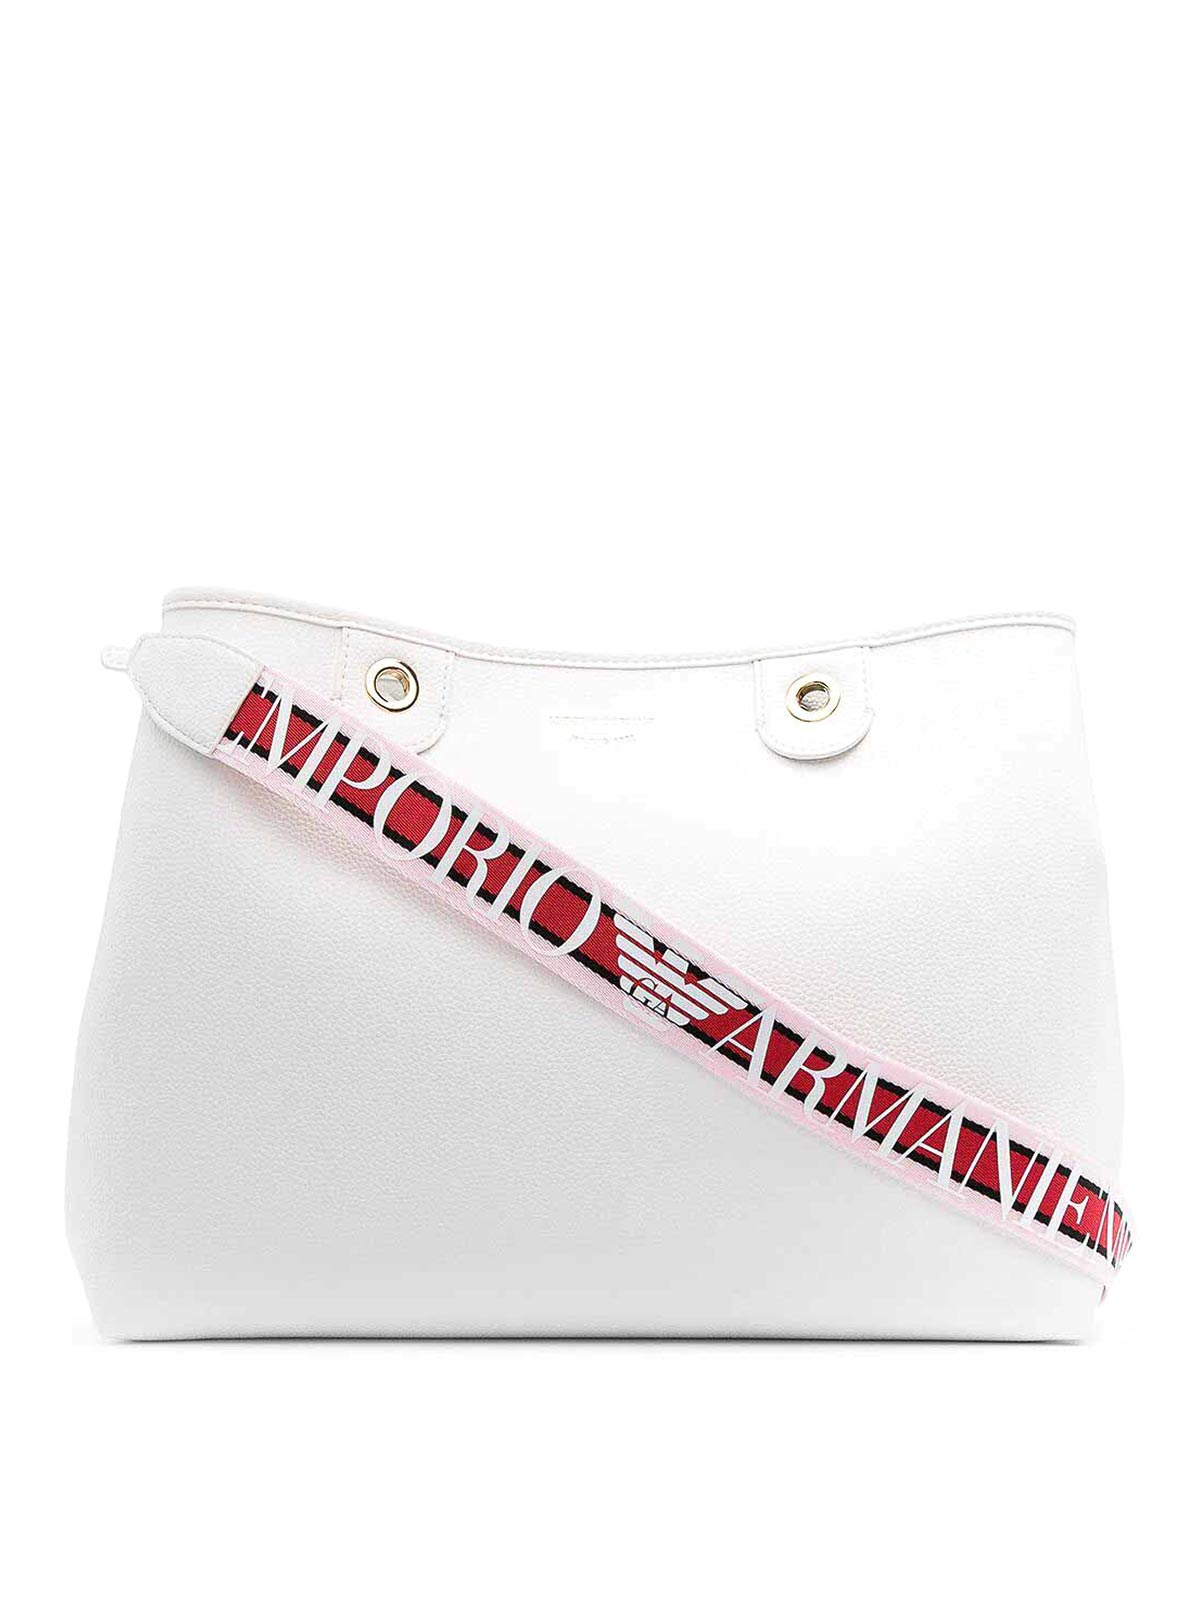 Emporio Armani Shopping Bag In White